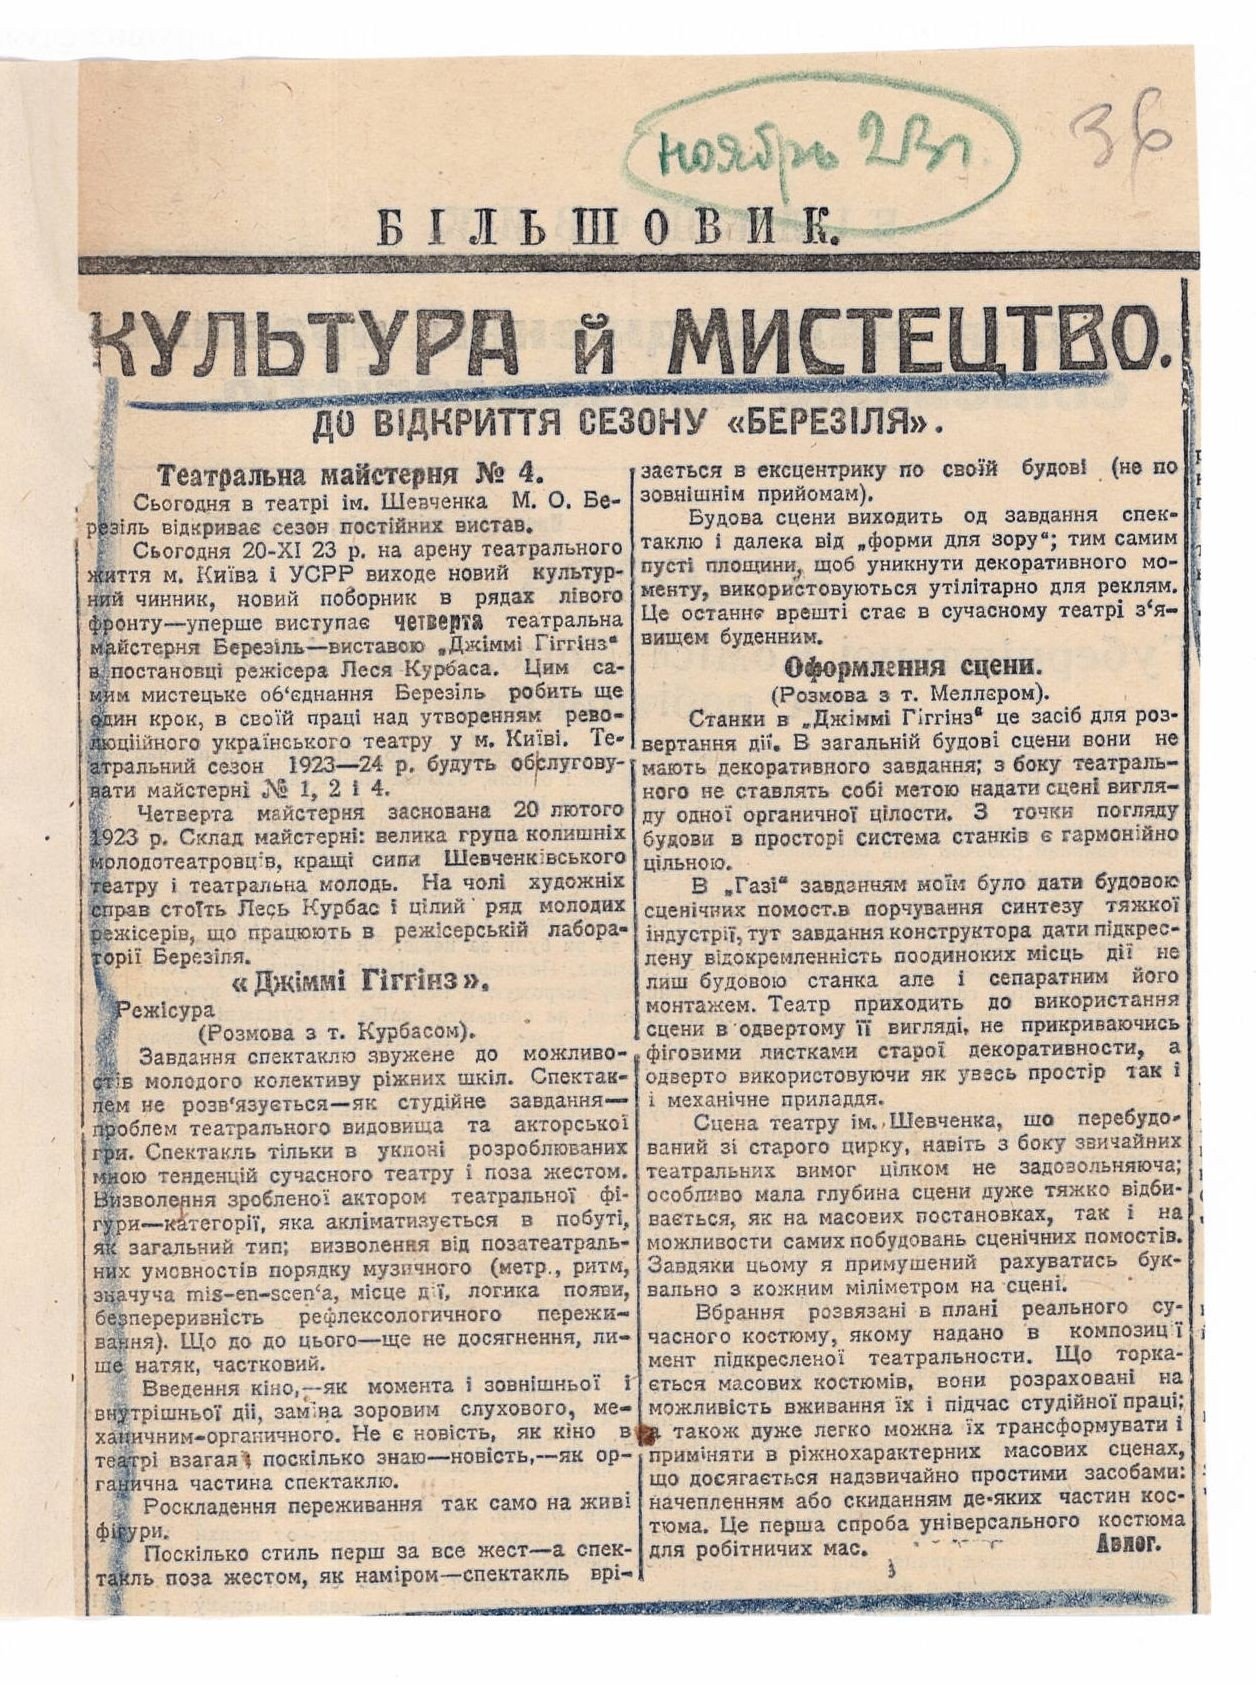 Інформація про відкриття нового сезону театру «Березіль» в газеті «Більшовик». Листопад 1923 р.